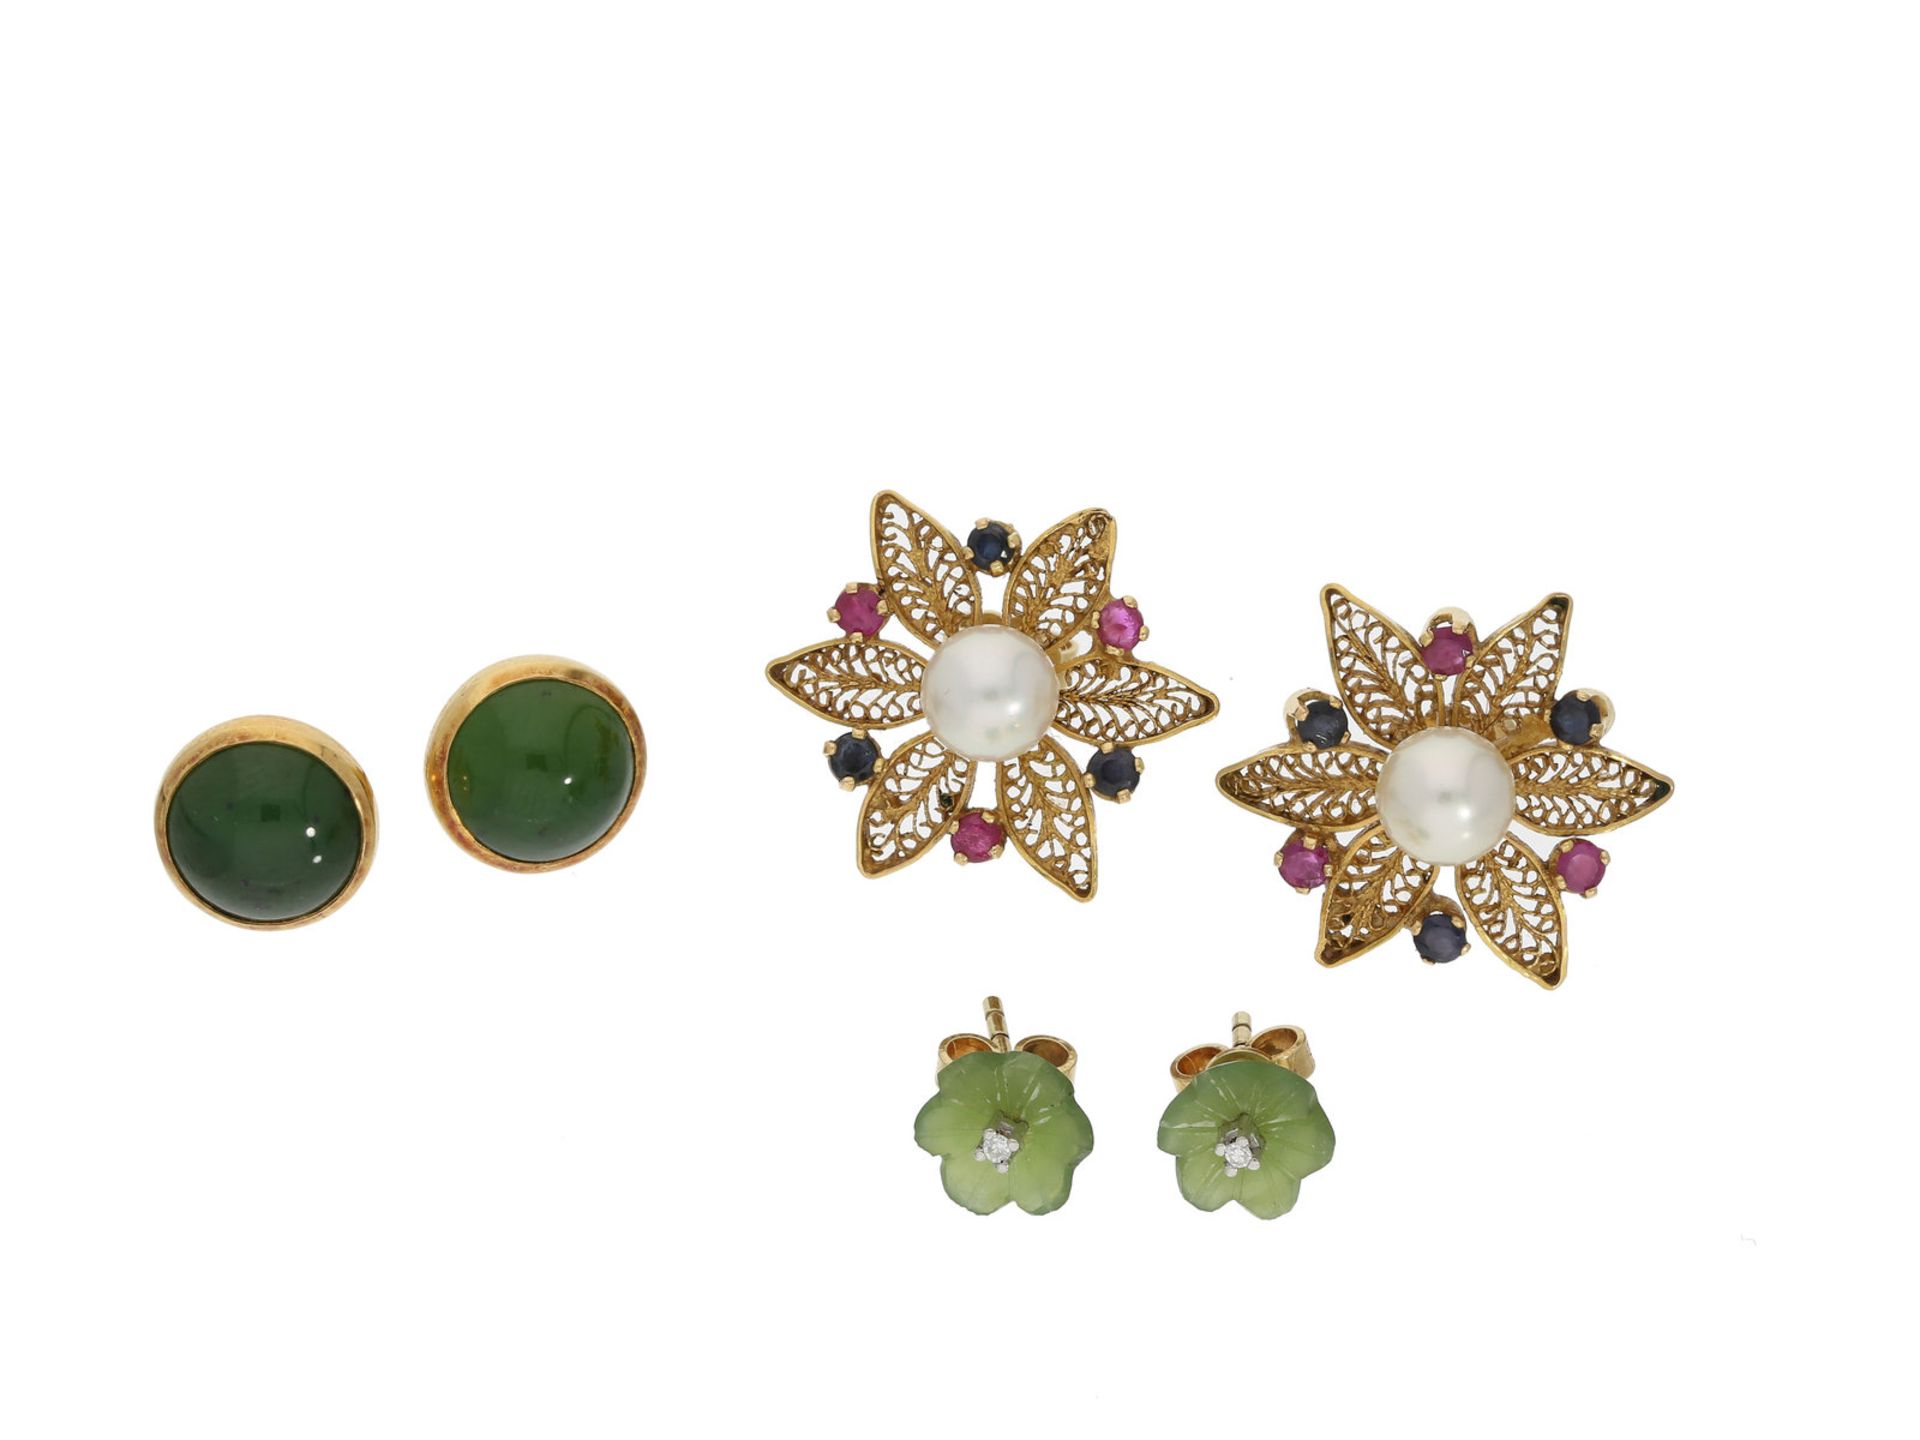 Ohrschmuck: interessantes kleines Konvolut Ohrschmuck mit Jade/Nephrit, Perlen und Farbsteinen,